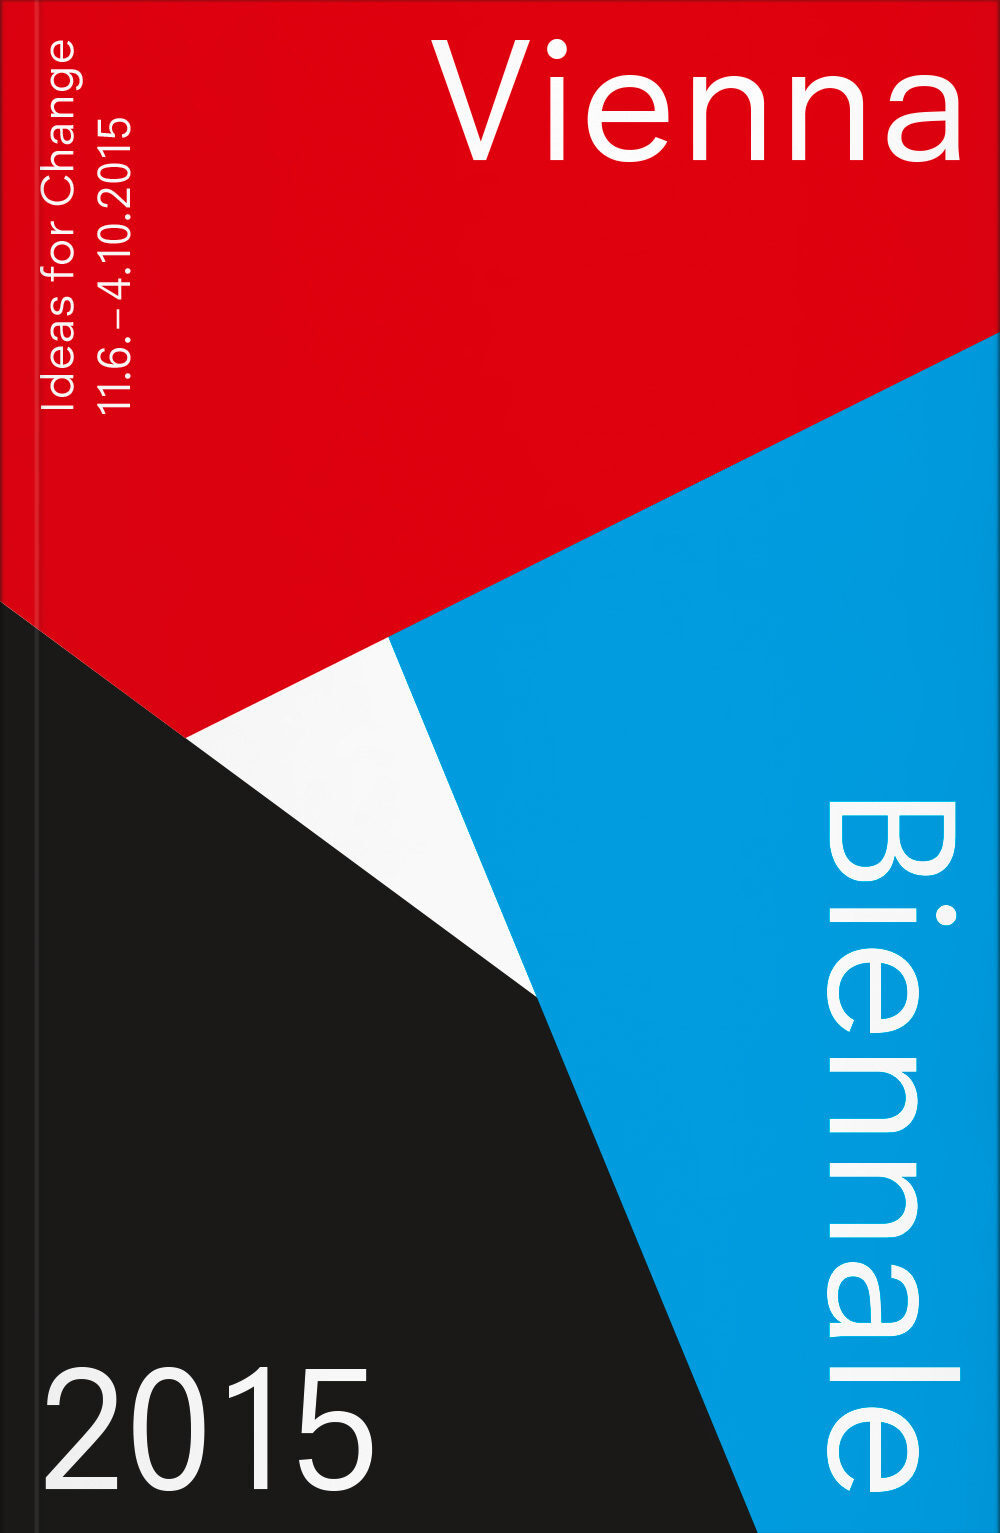 Vienna Biennale Guide VFMK Verlag für moderne Kunst